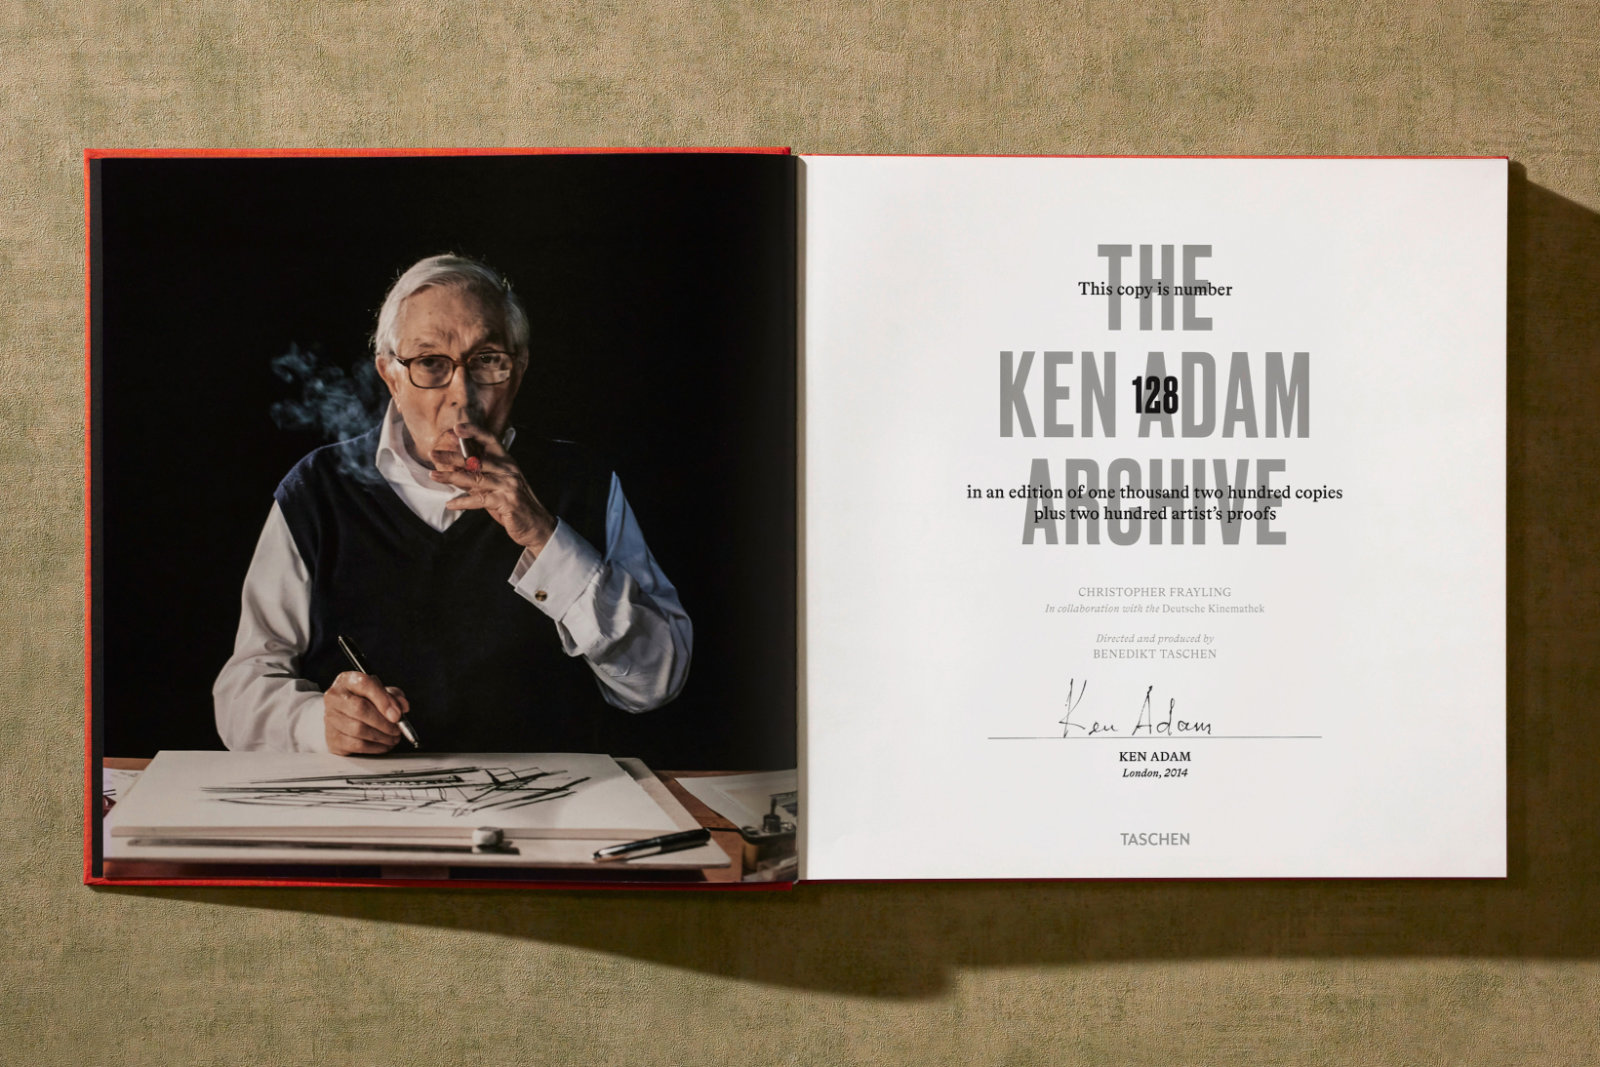 Buchseite aus The Ken Adam Archive mit Portrait und Autogramm